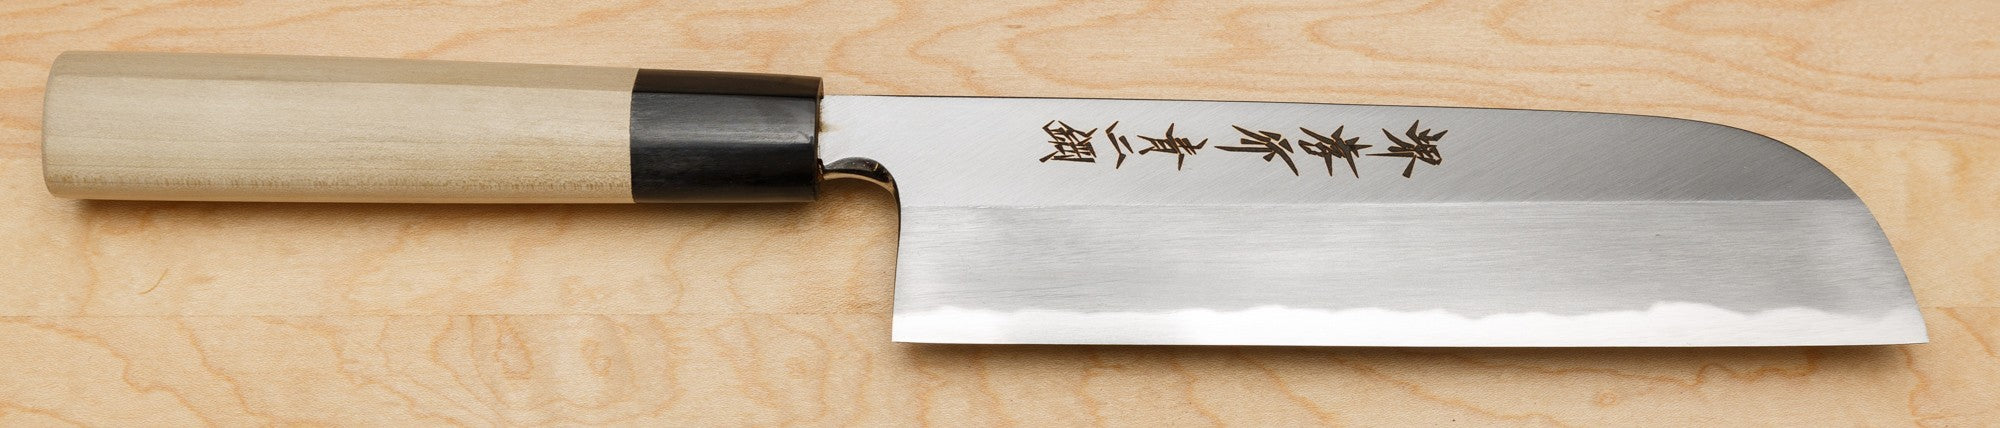 Sakai Takayuki Kamagata Usuba Knife, Aonikou, 195mm / 7.7"